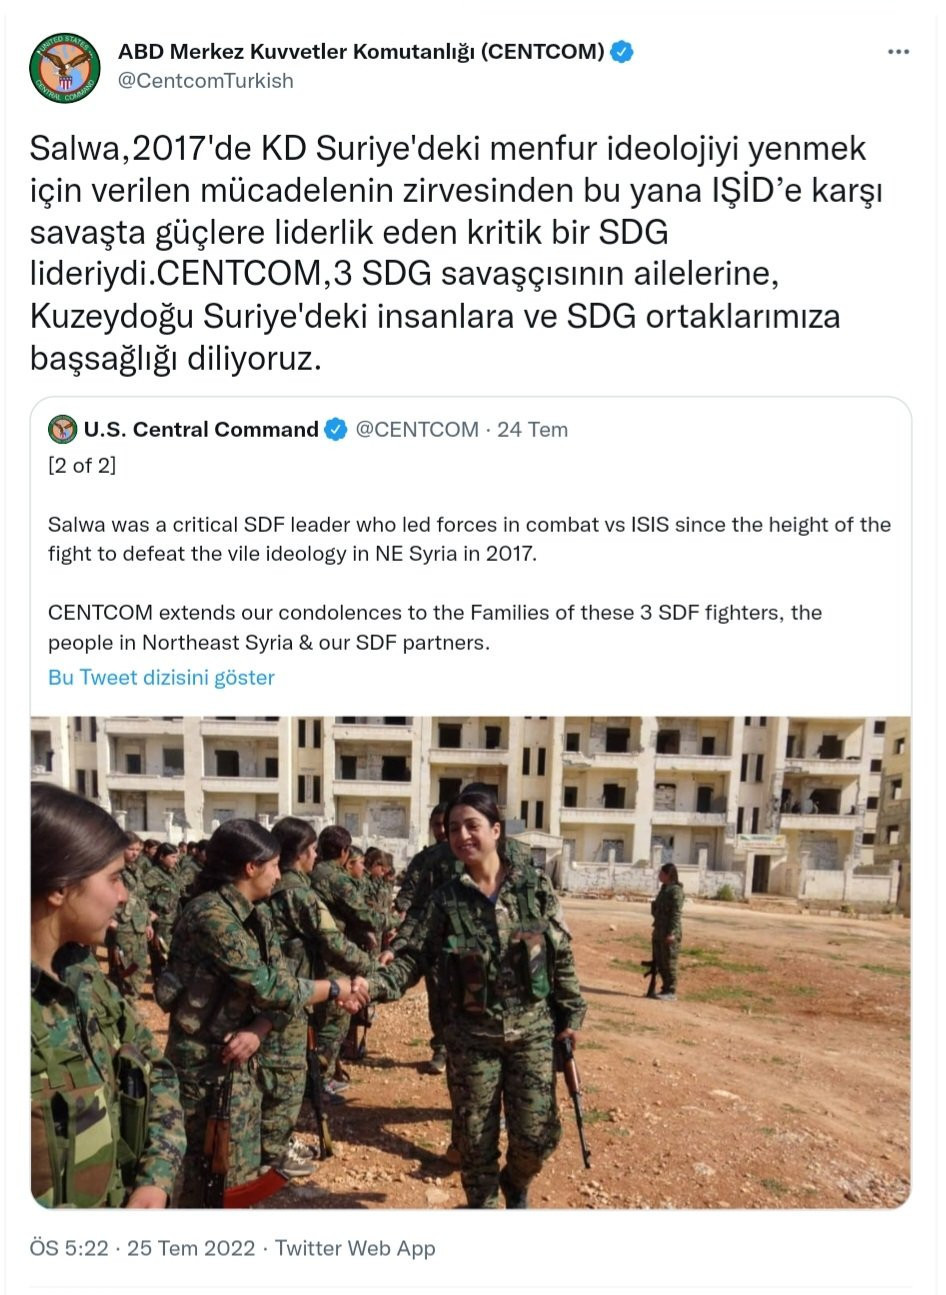 Bakan Soylu'dan ABD'ye taziye tepkisi: PKK yöneticisine ağıt yakan ABD'nin şehitlerimize taziyesi, terör örgütüyle sinsice eşit kılma çabasıdır